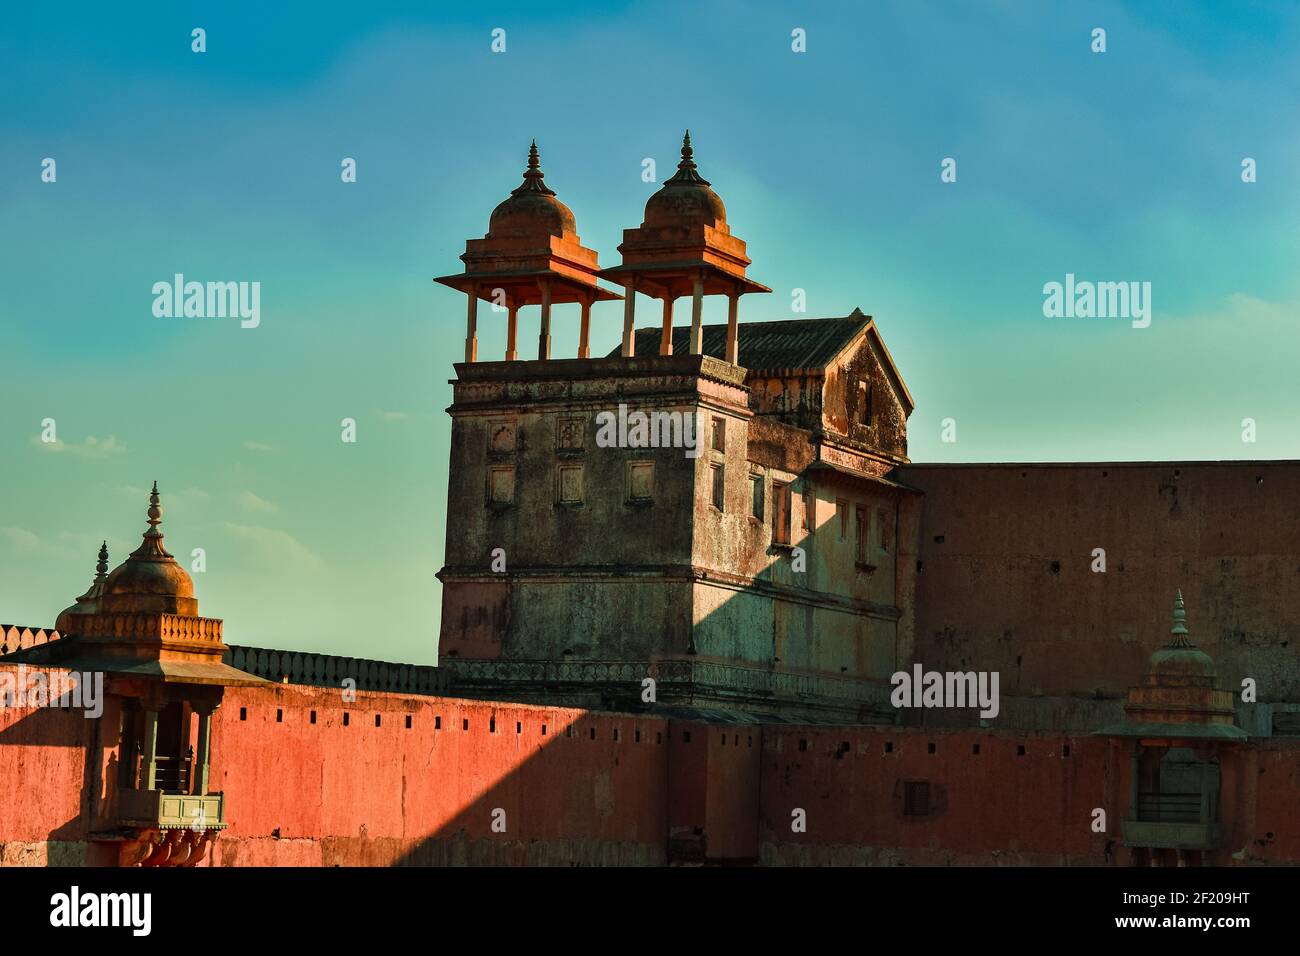 Architecture, conception et paysage de différents forts au Rajasthan, Inde. Banque D'Images